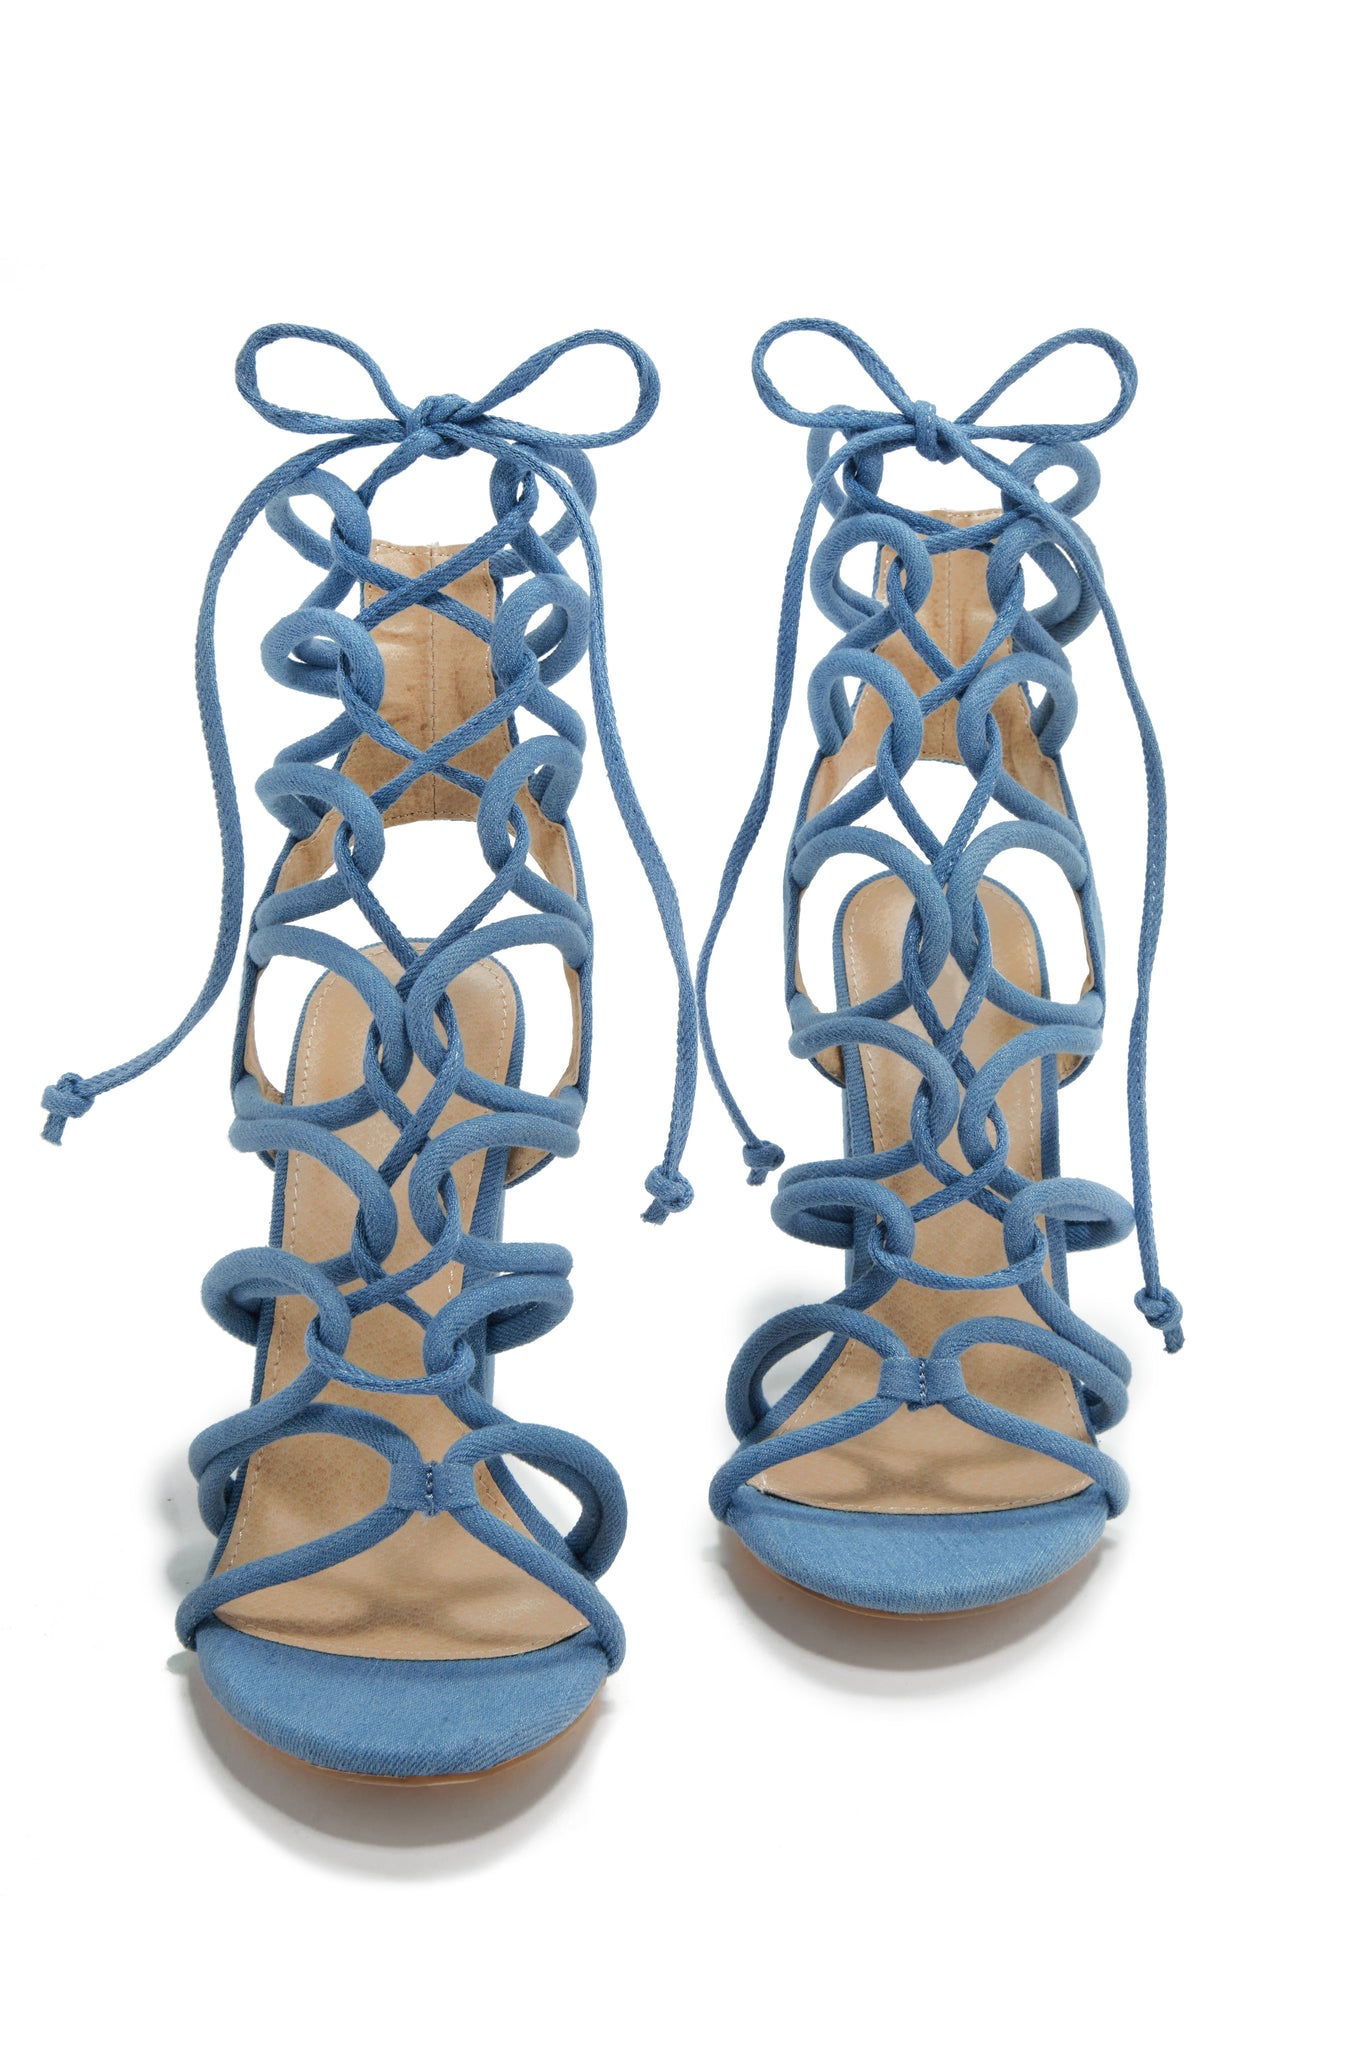 ZOOCHIE ORANGE Lace Up Heels | Buy Women's HEELS Online | Novo Shoes NZ